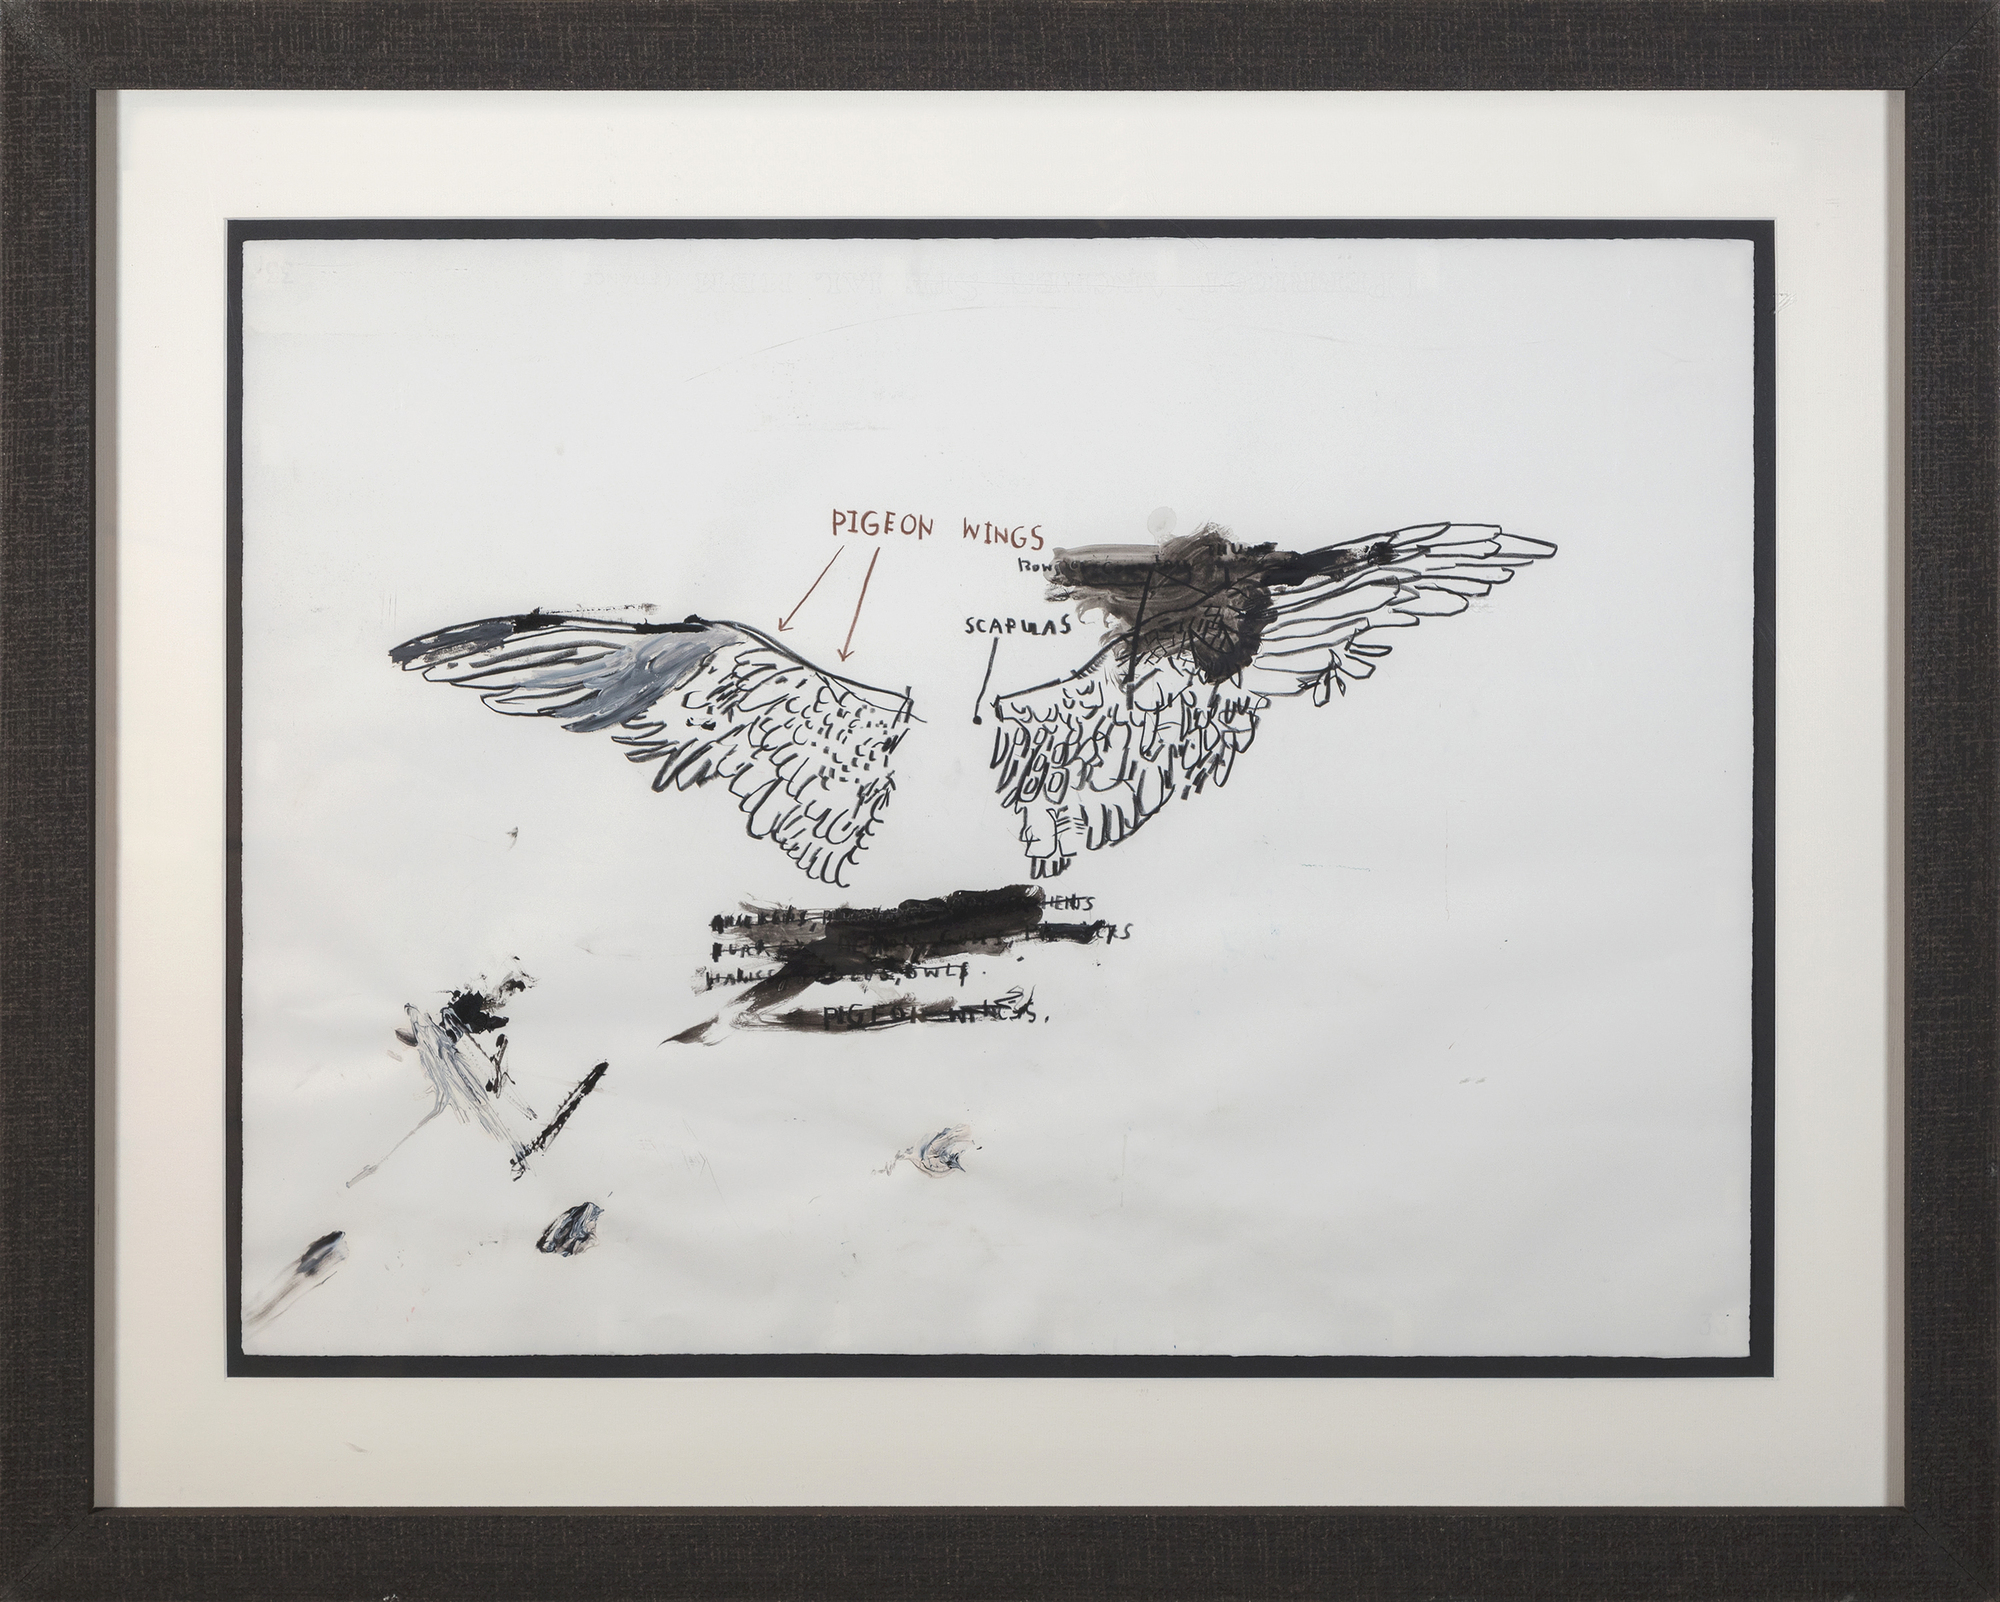 جان ميشيل باسكيات - بدون عنوان (تشريح الحمام) - زيت وجرافيت وطباشير على ورق - 22 × 30 بوصة.